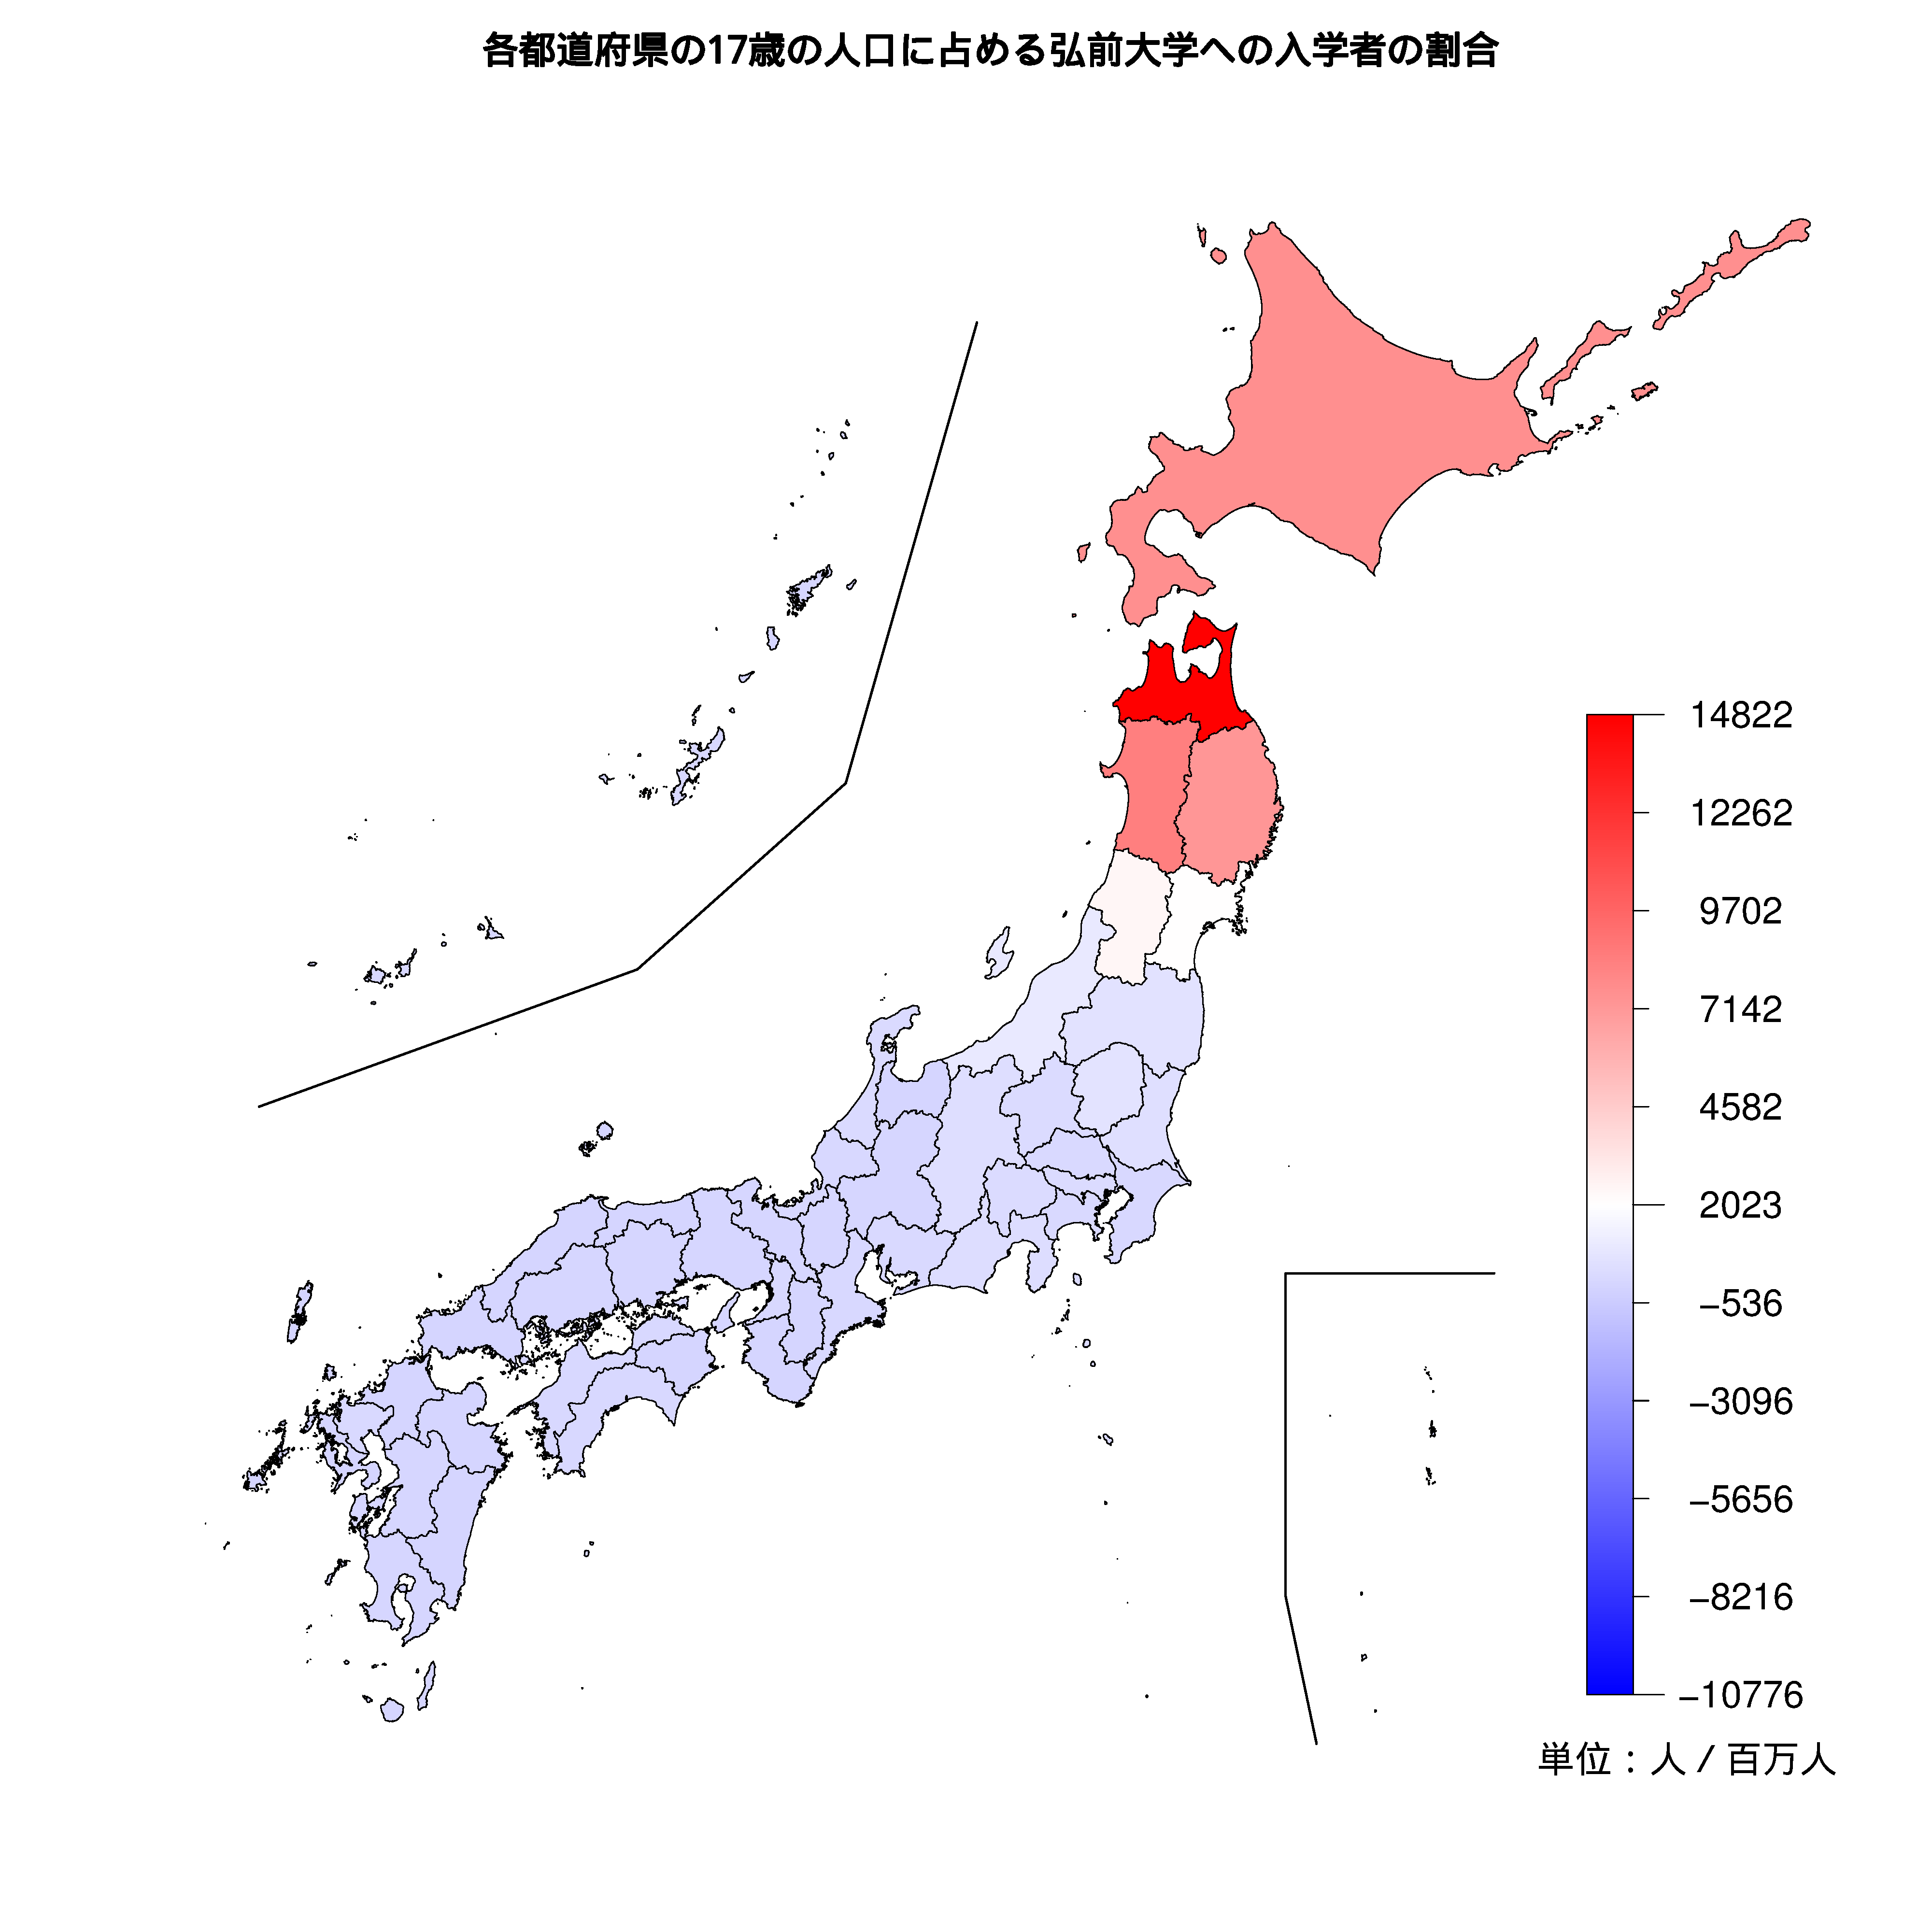 弘前大学への入学者が多い都道府県の色分け地図